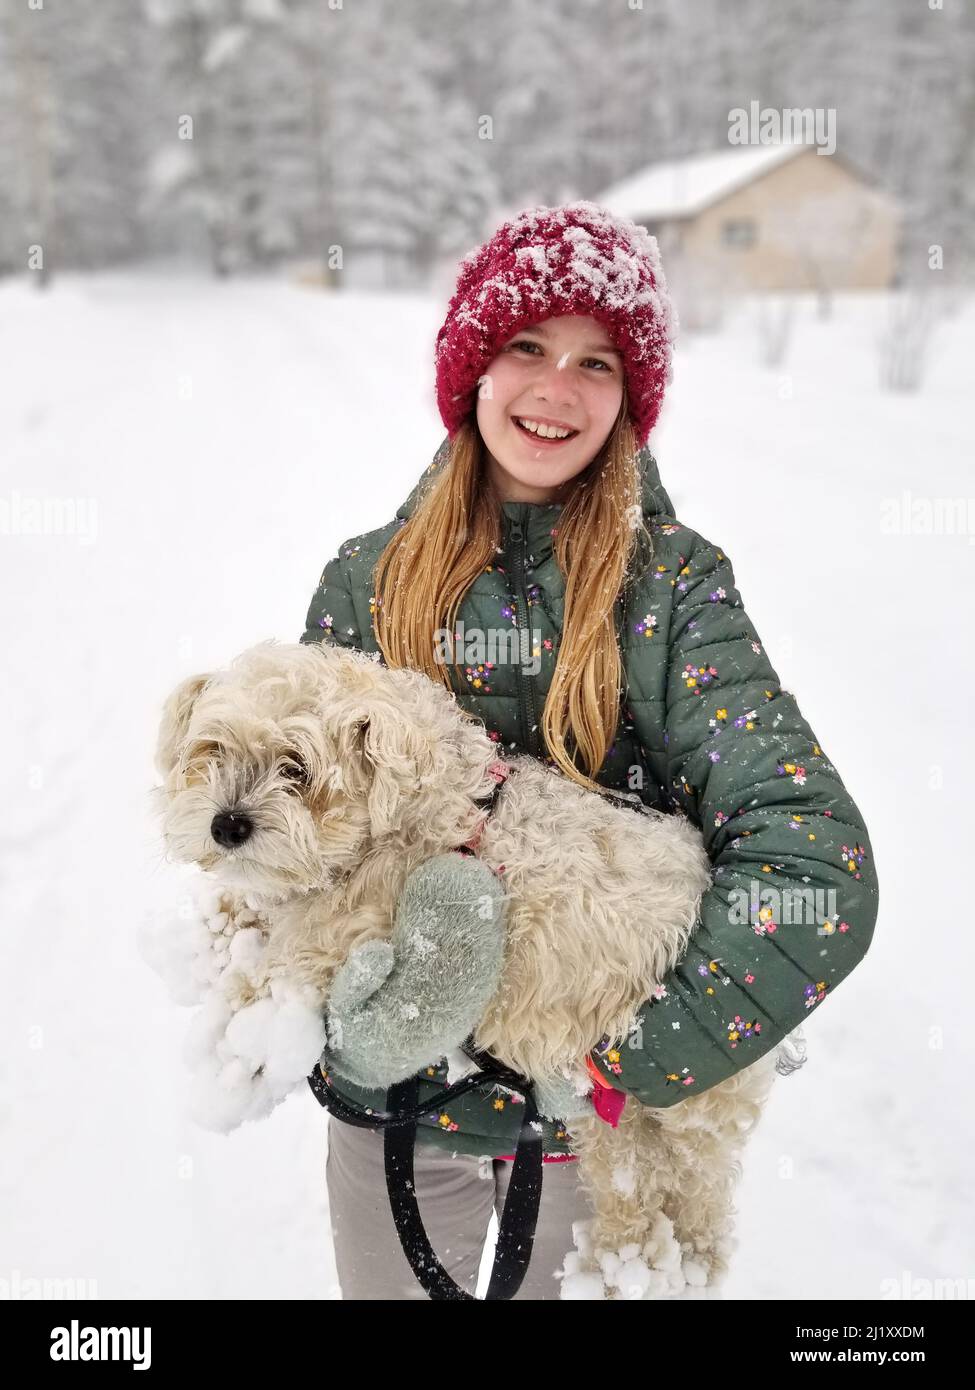 Portrait d'Une jeune fille souriante tenant son chien extrêmement Shaggy dont les griffes sont ancrées dans la neige Banque D'Images